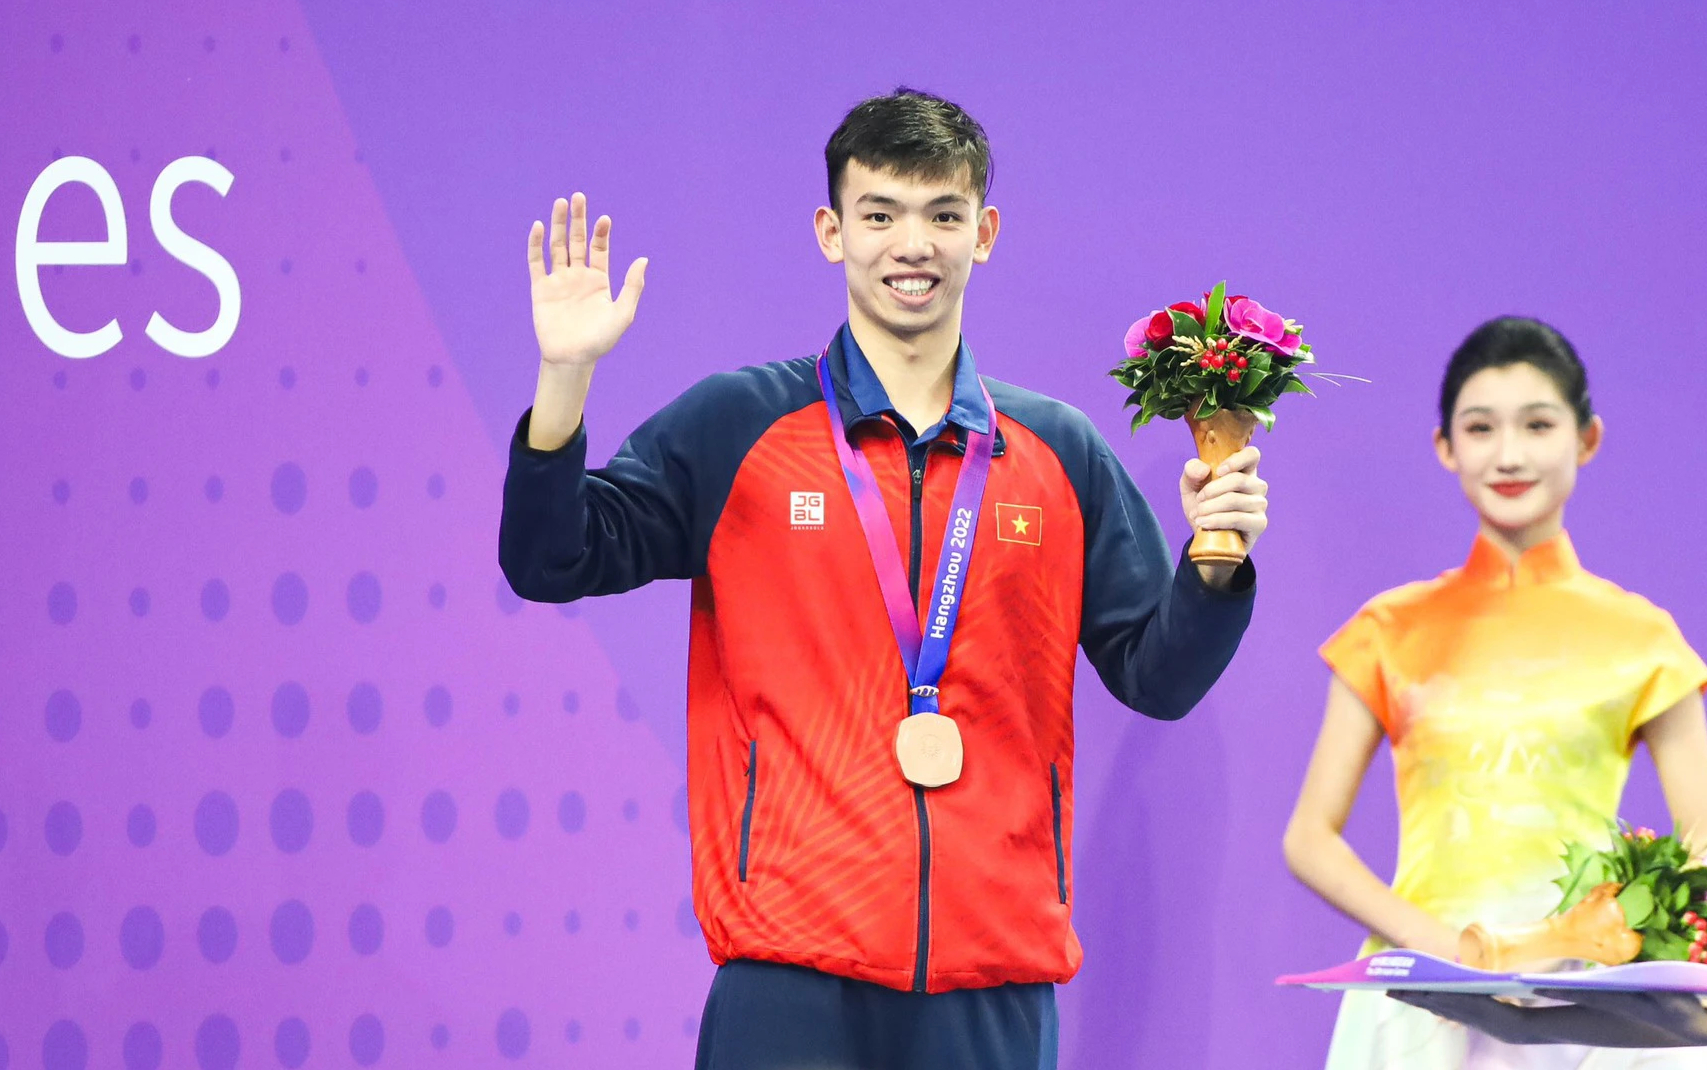 ASIAD 19 ngày 29-9: Trần Thị Nhi Yến vào chung kết cự ly 100m nữ - Ảnh 5.